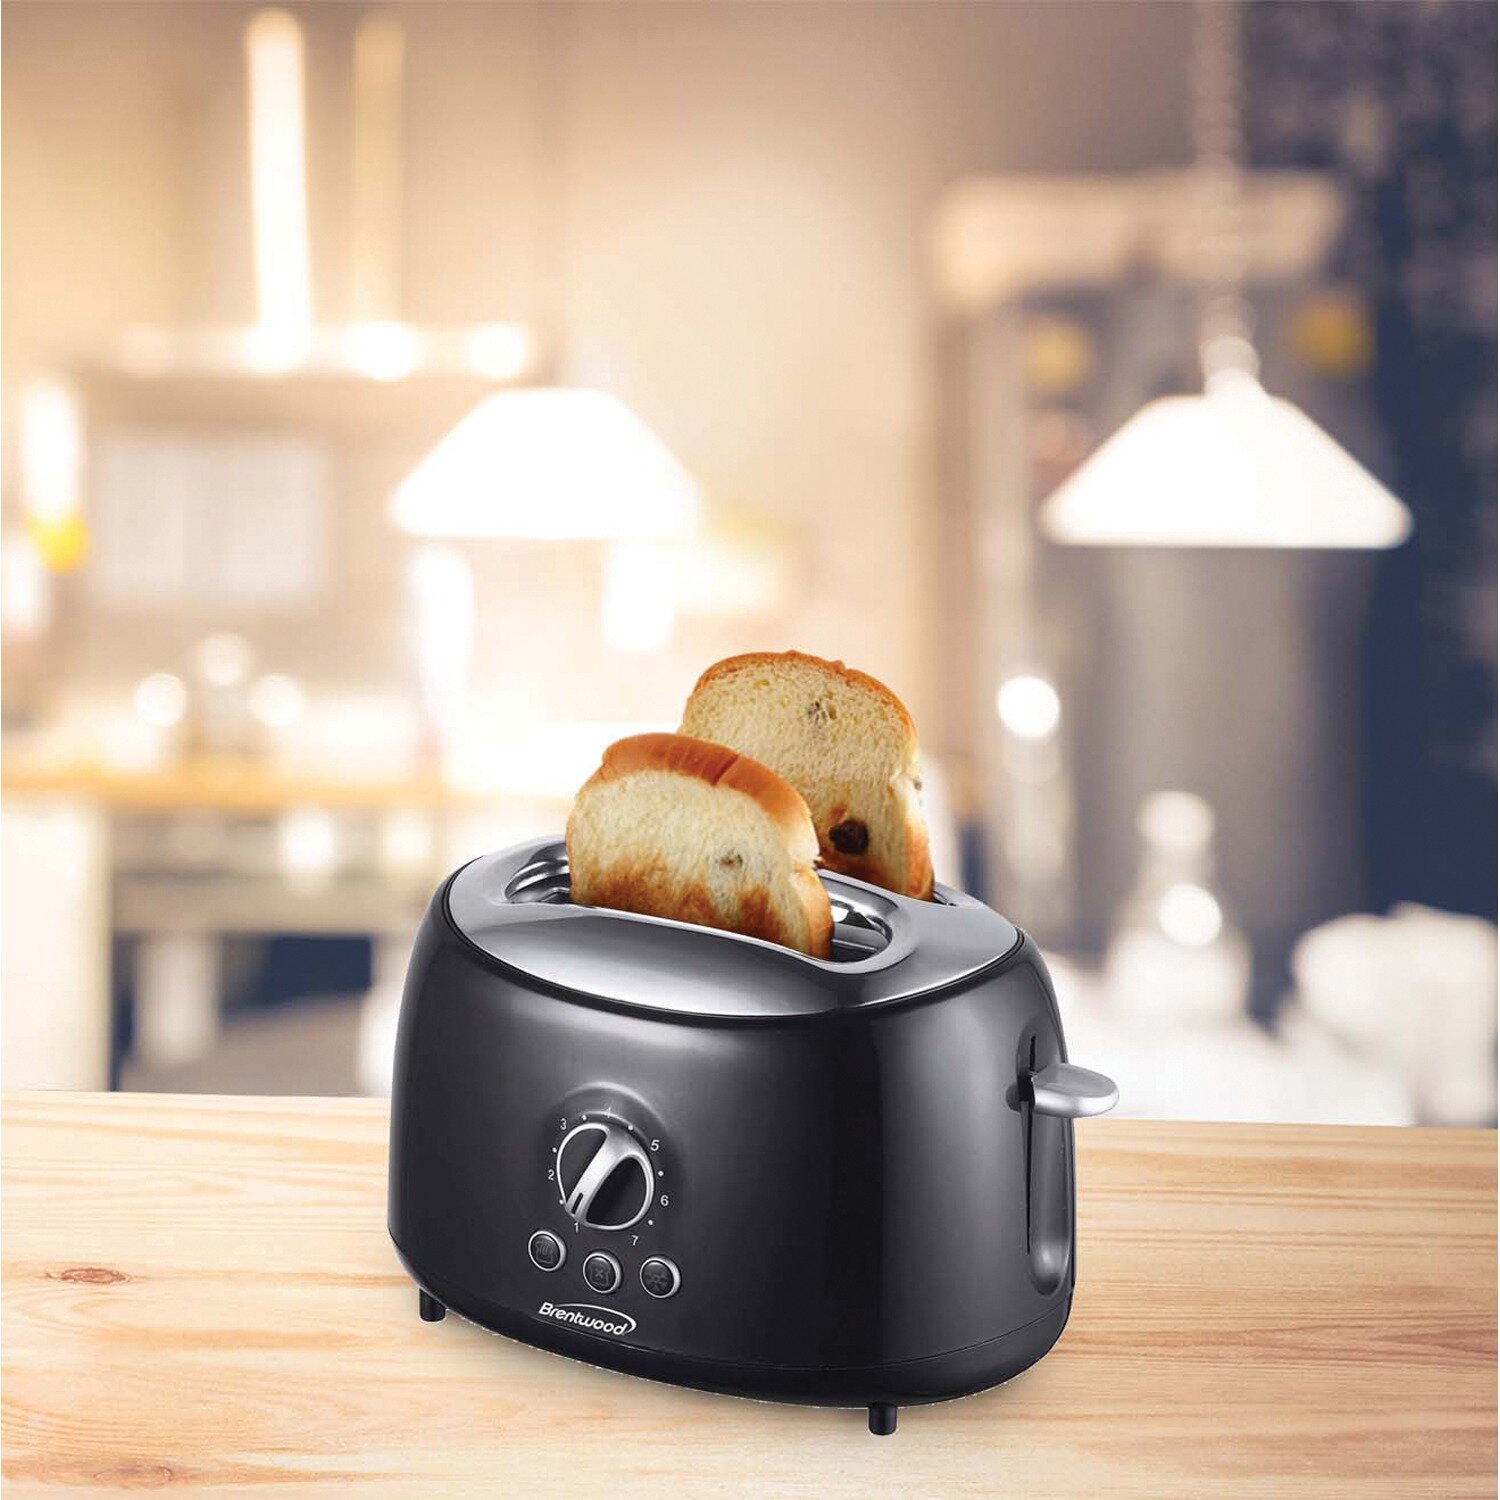 https://assets.wfcdn.com/im/32511908/compr-r85/1171/117175815/brentwood-appliances-2-slice-toaster.jpg